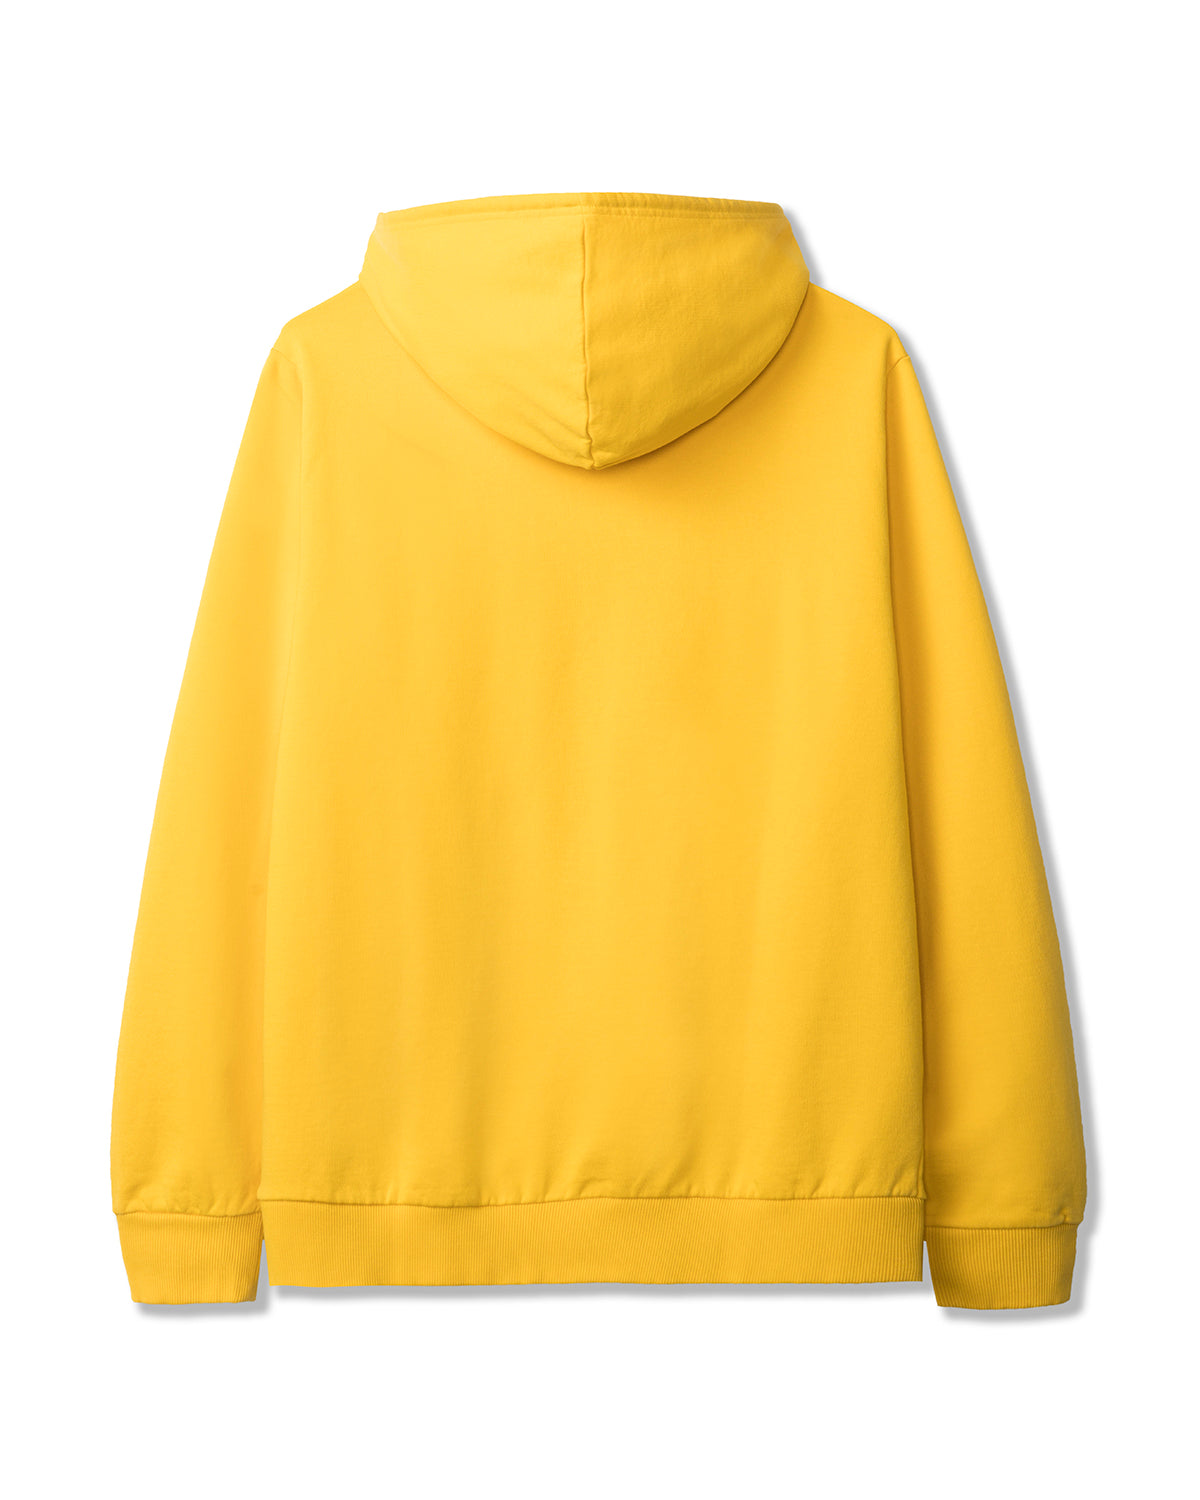 Men's Spacy Long Sleeve Hooded Sweatshirt A.P.C. x Brain Dead - Yellow